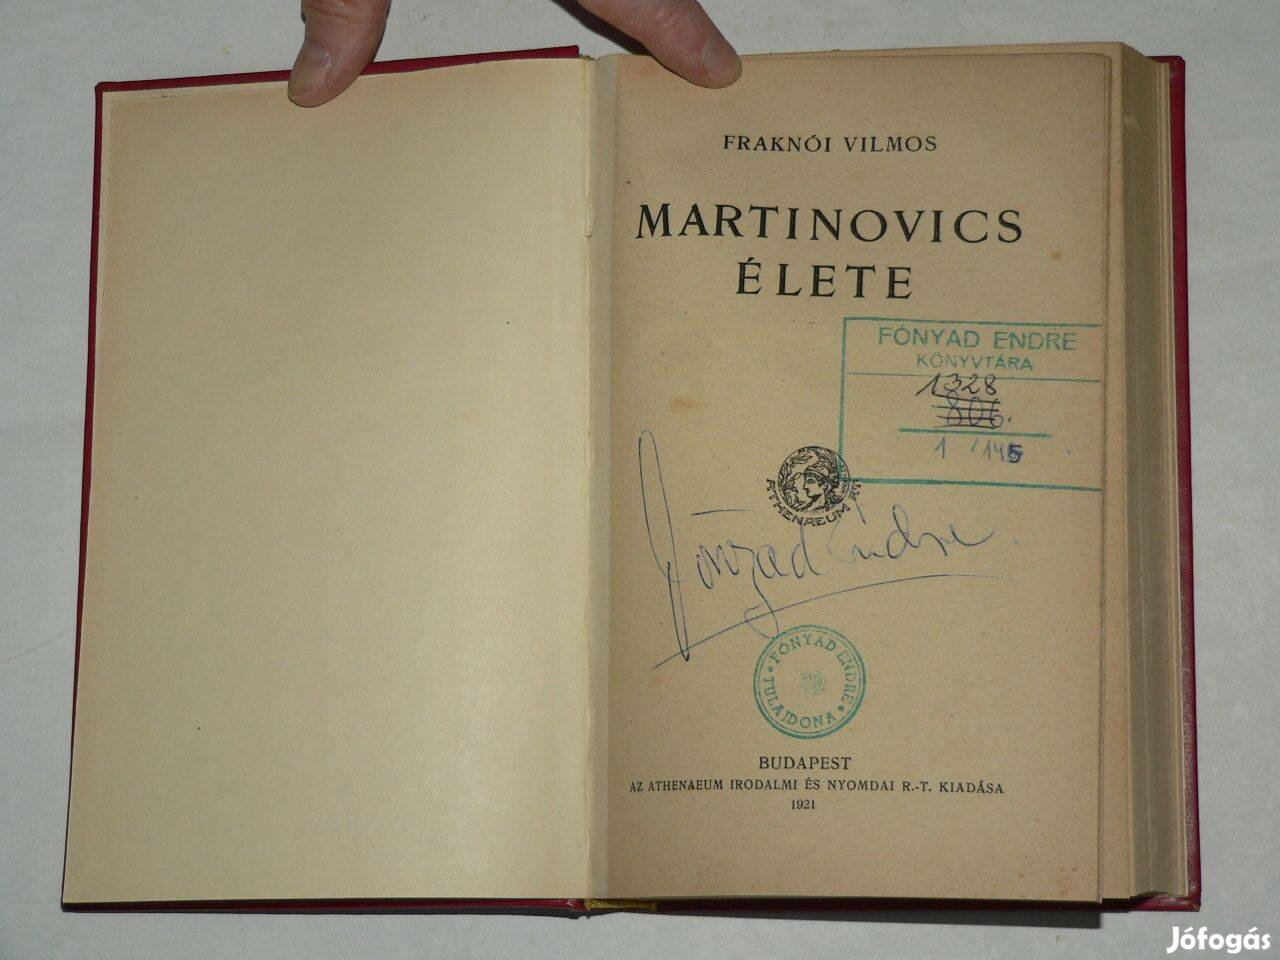 Fraknói Vilmos Martinovics élete / könyv Athenaeum Kiadósa 1921 Újrakö